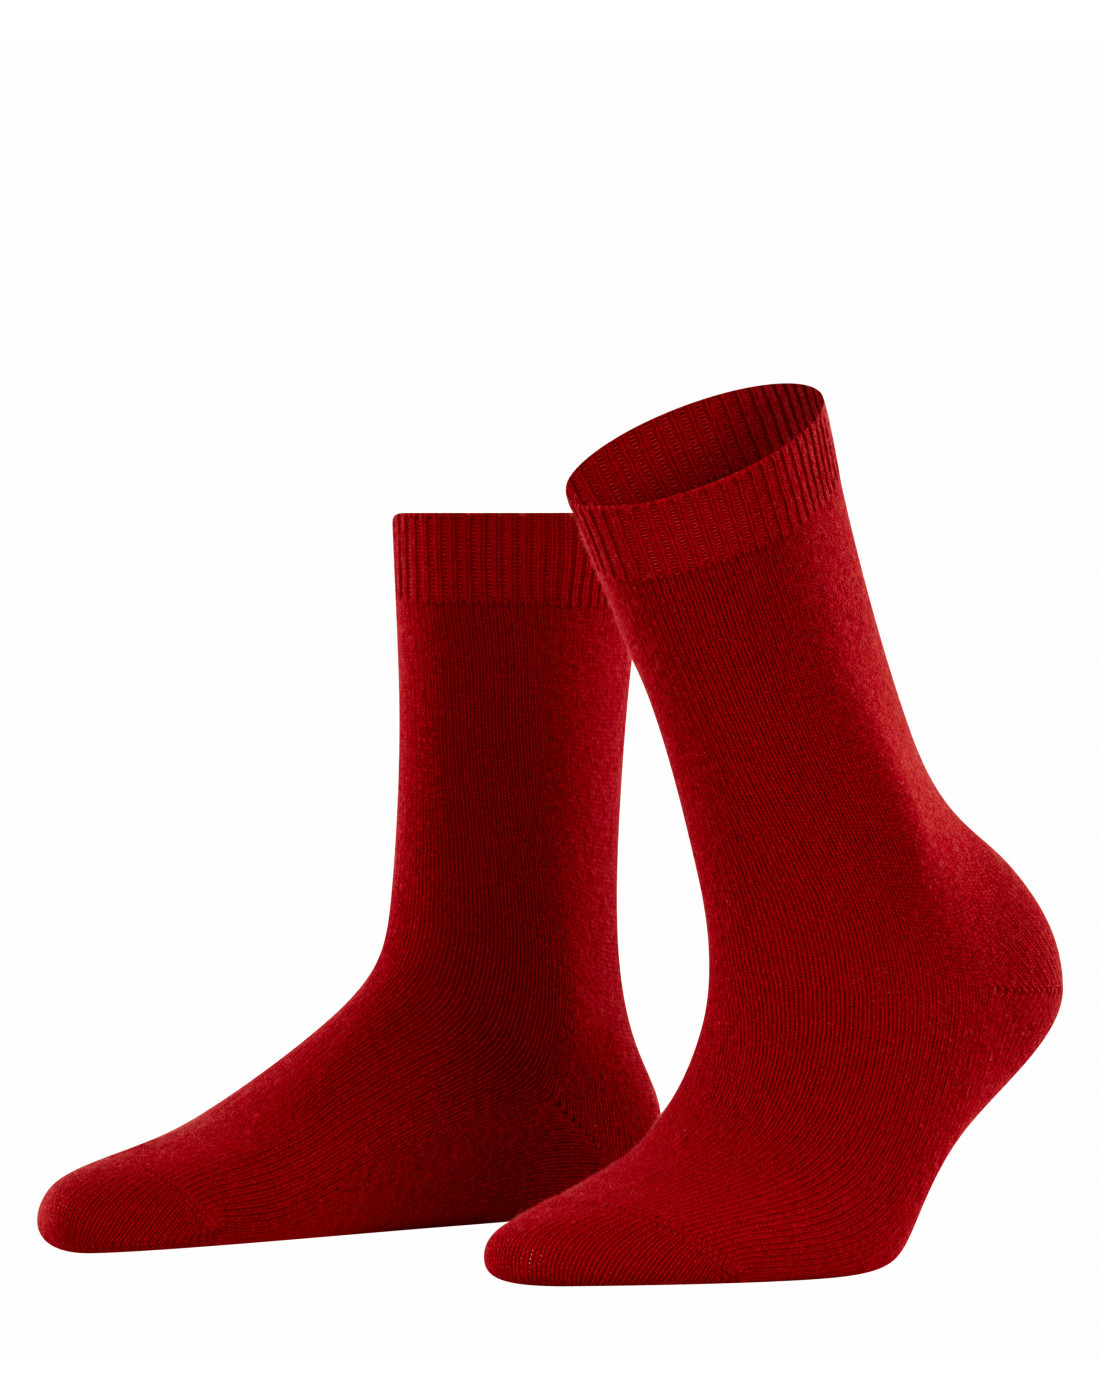 Шкарпетки червоні жіночі-1